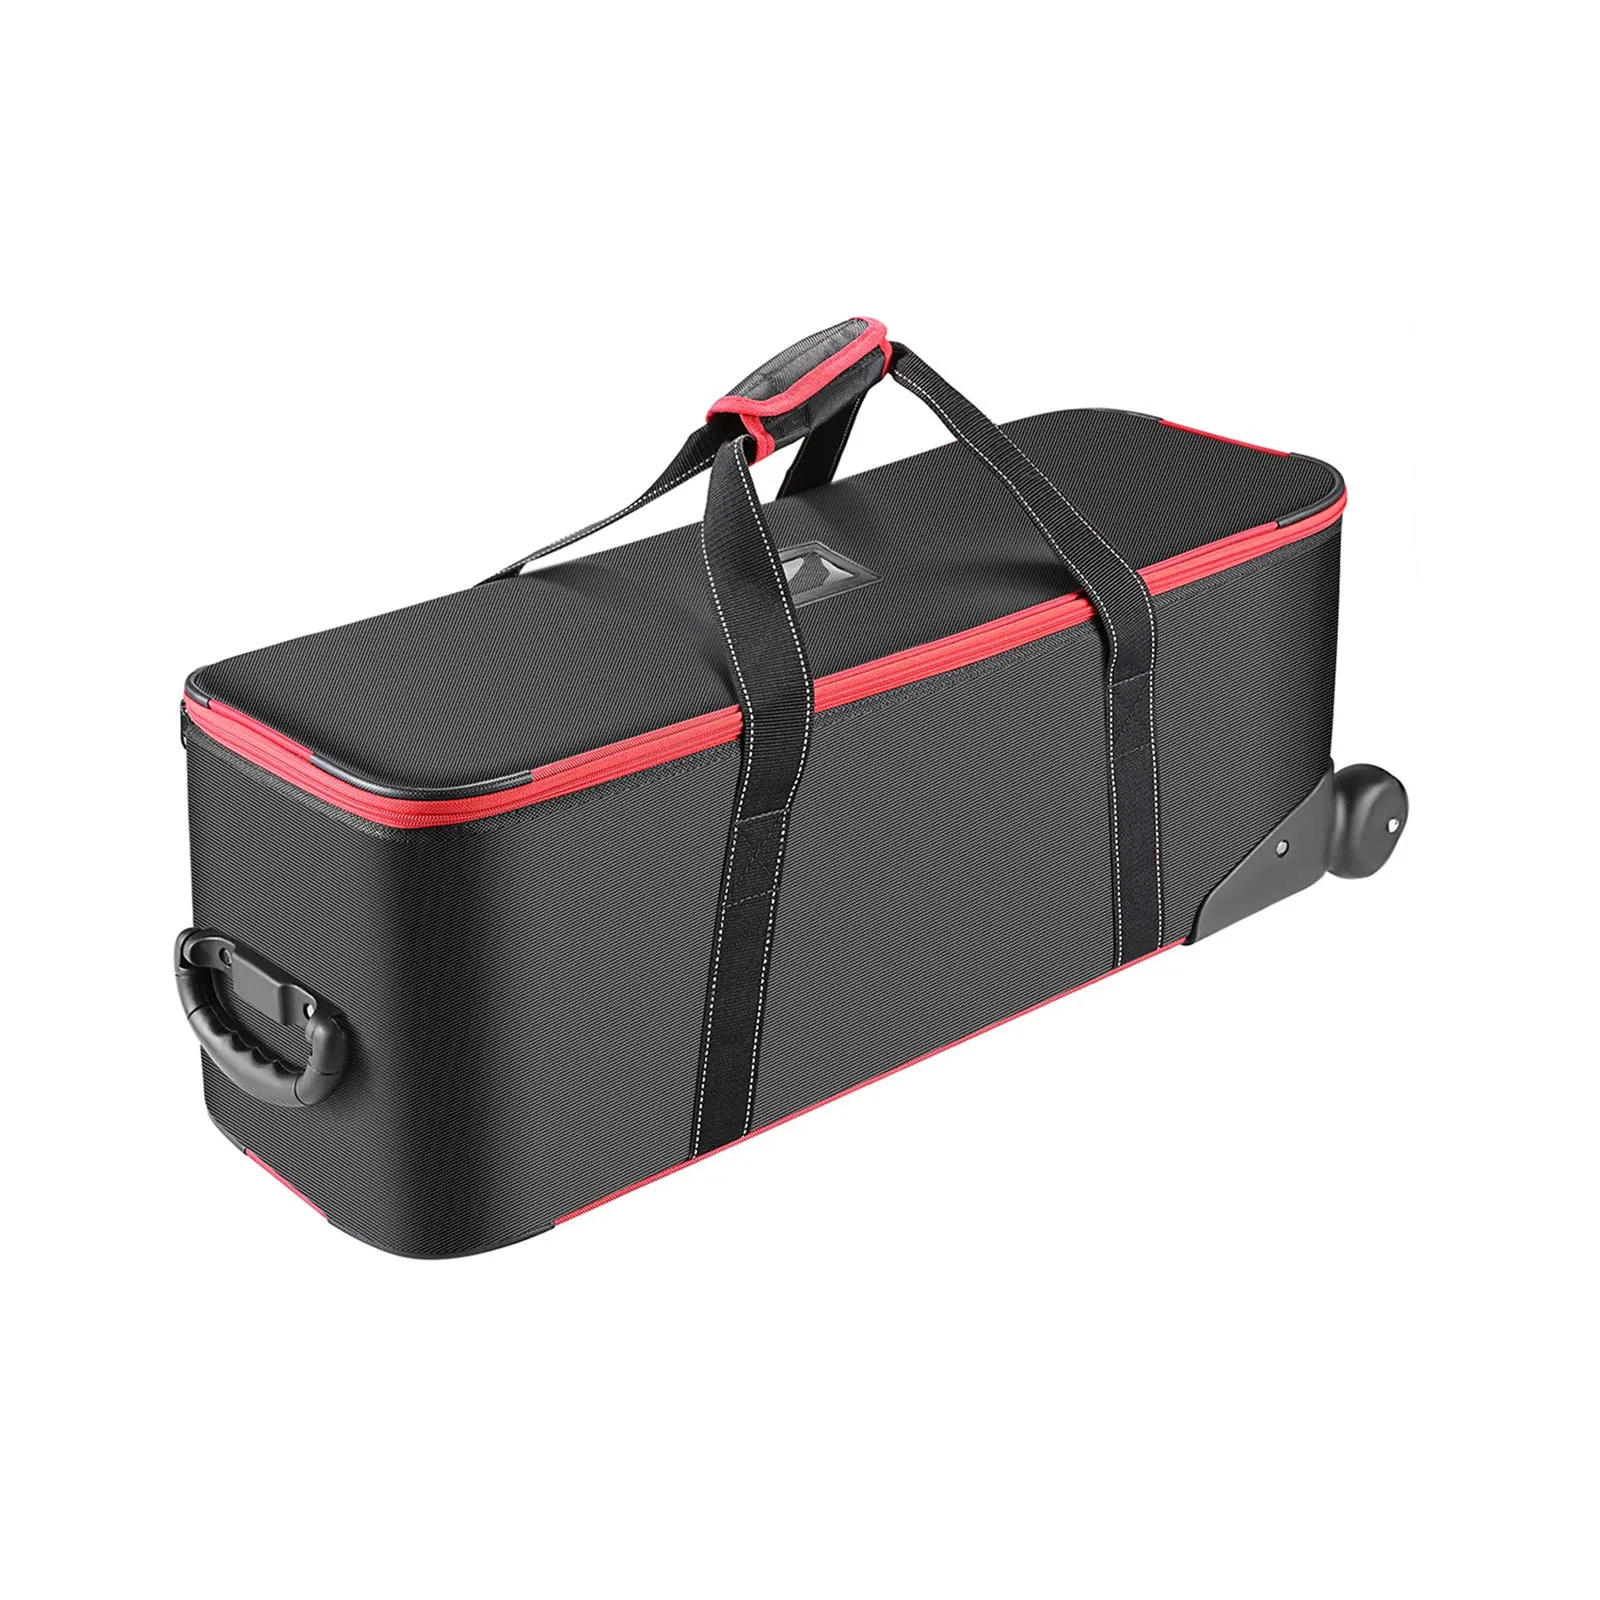 30"x11"x11" फोटो स्टूडियो उपकरण ईवा कैमरा ट्राइपॉड मोनोपॉड ट्रॉली रोलर पैडेड बैग हार्ड केस लाइट स्टैंड लैंप के लिए